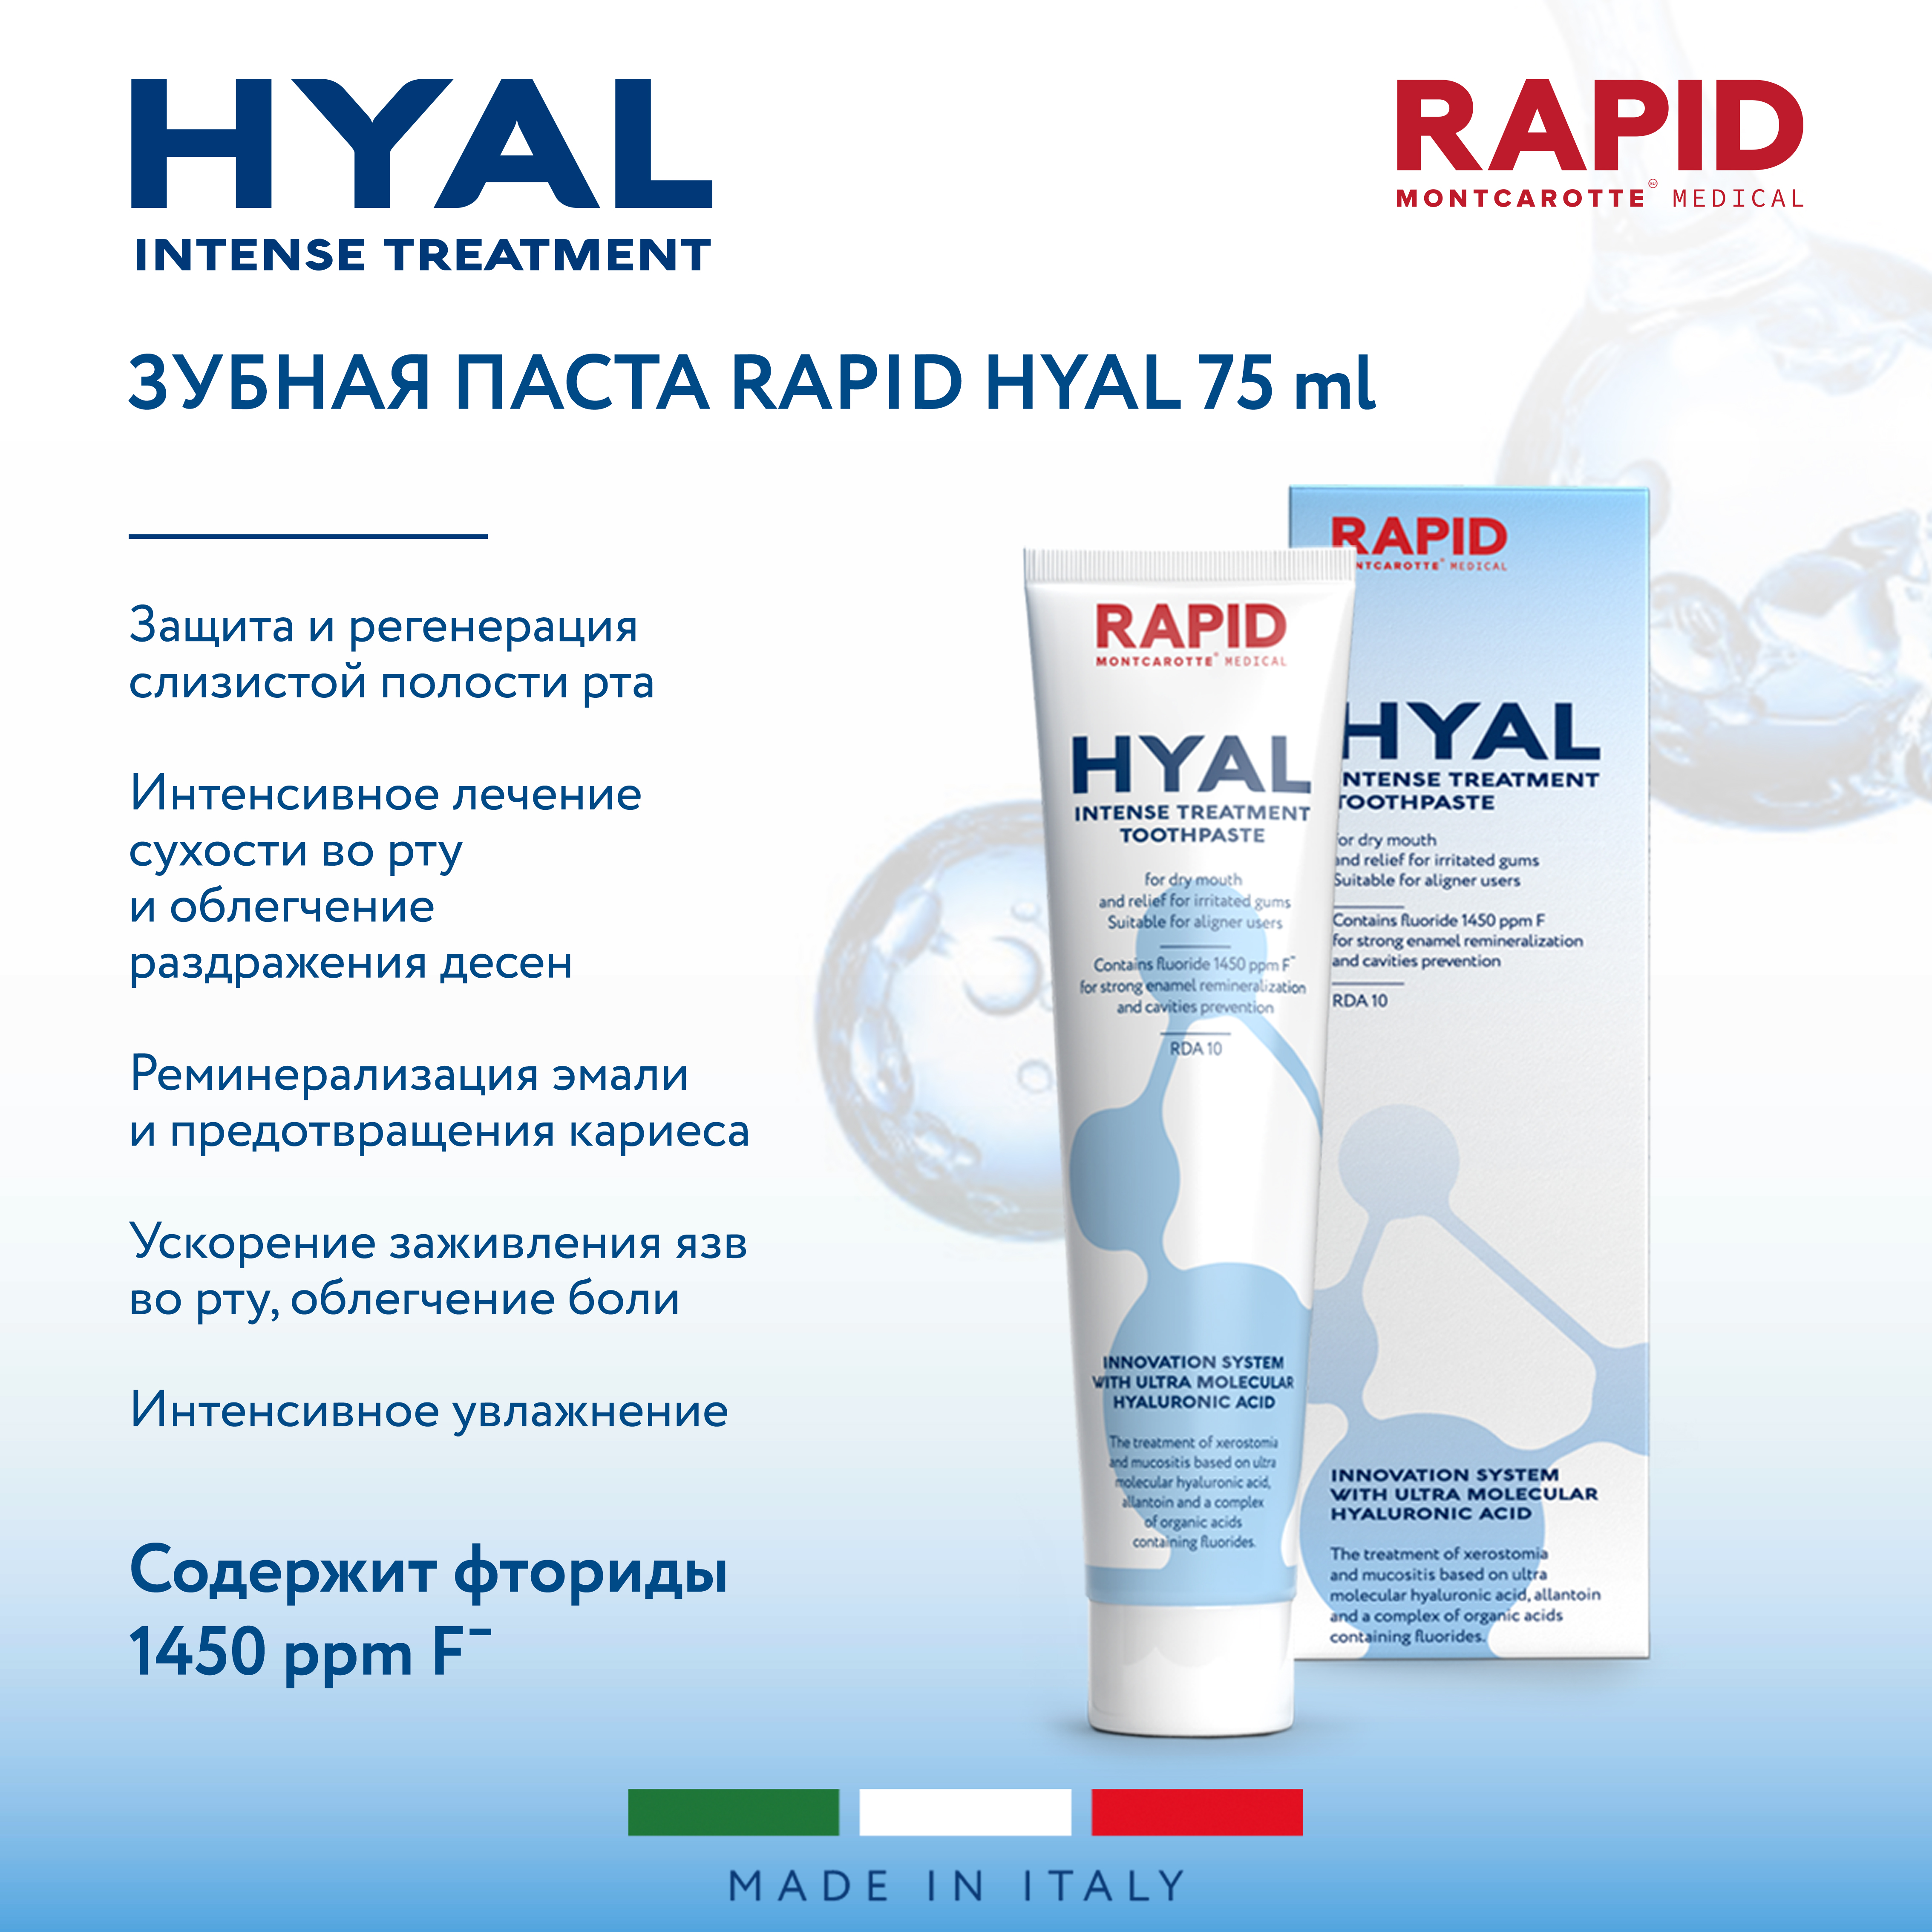 Зубная паста Montcarotte Rapid Hyal увлажняющая, 75 мл food safety rapid detection and analysis laboratory equipment